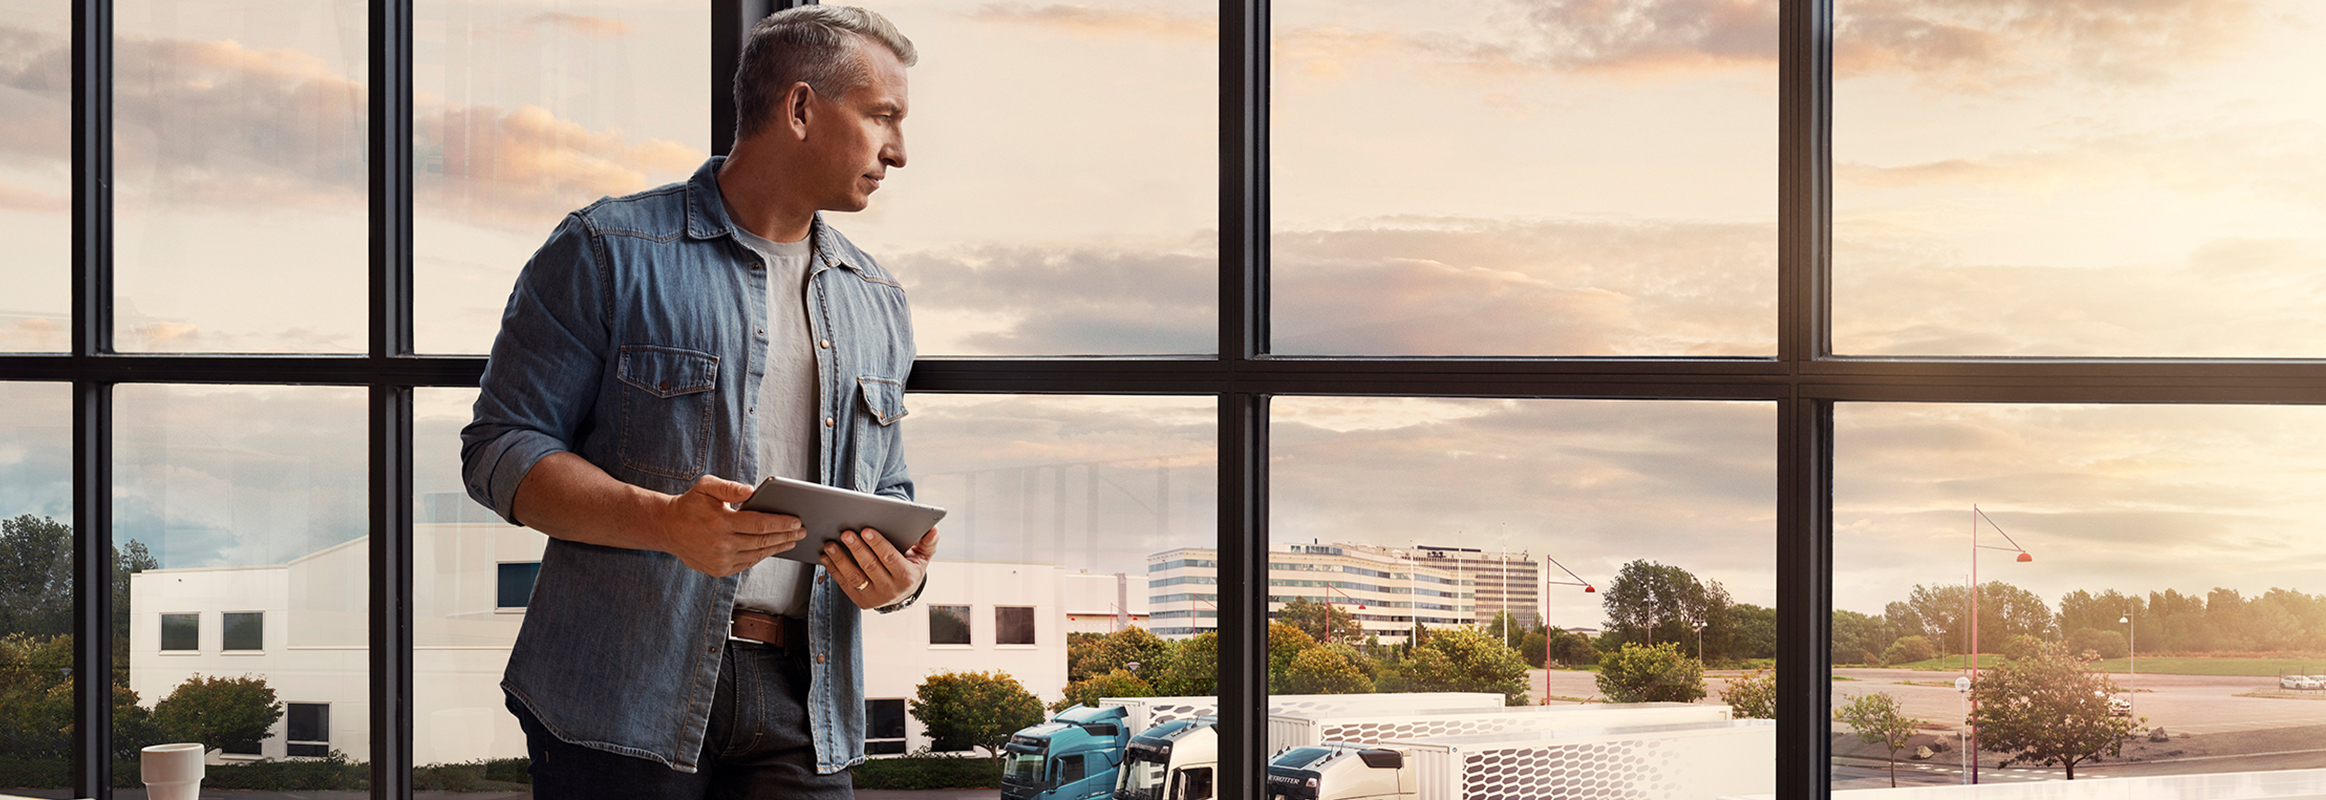 Mężczyzna trzymający tablet stoi przy oknie i spogląda w dół na swoją flotę samochodów ciężarowych